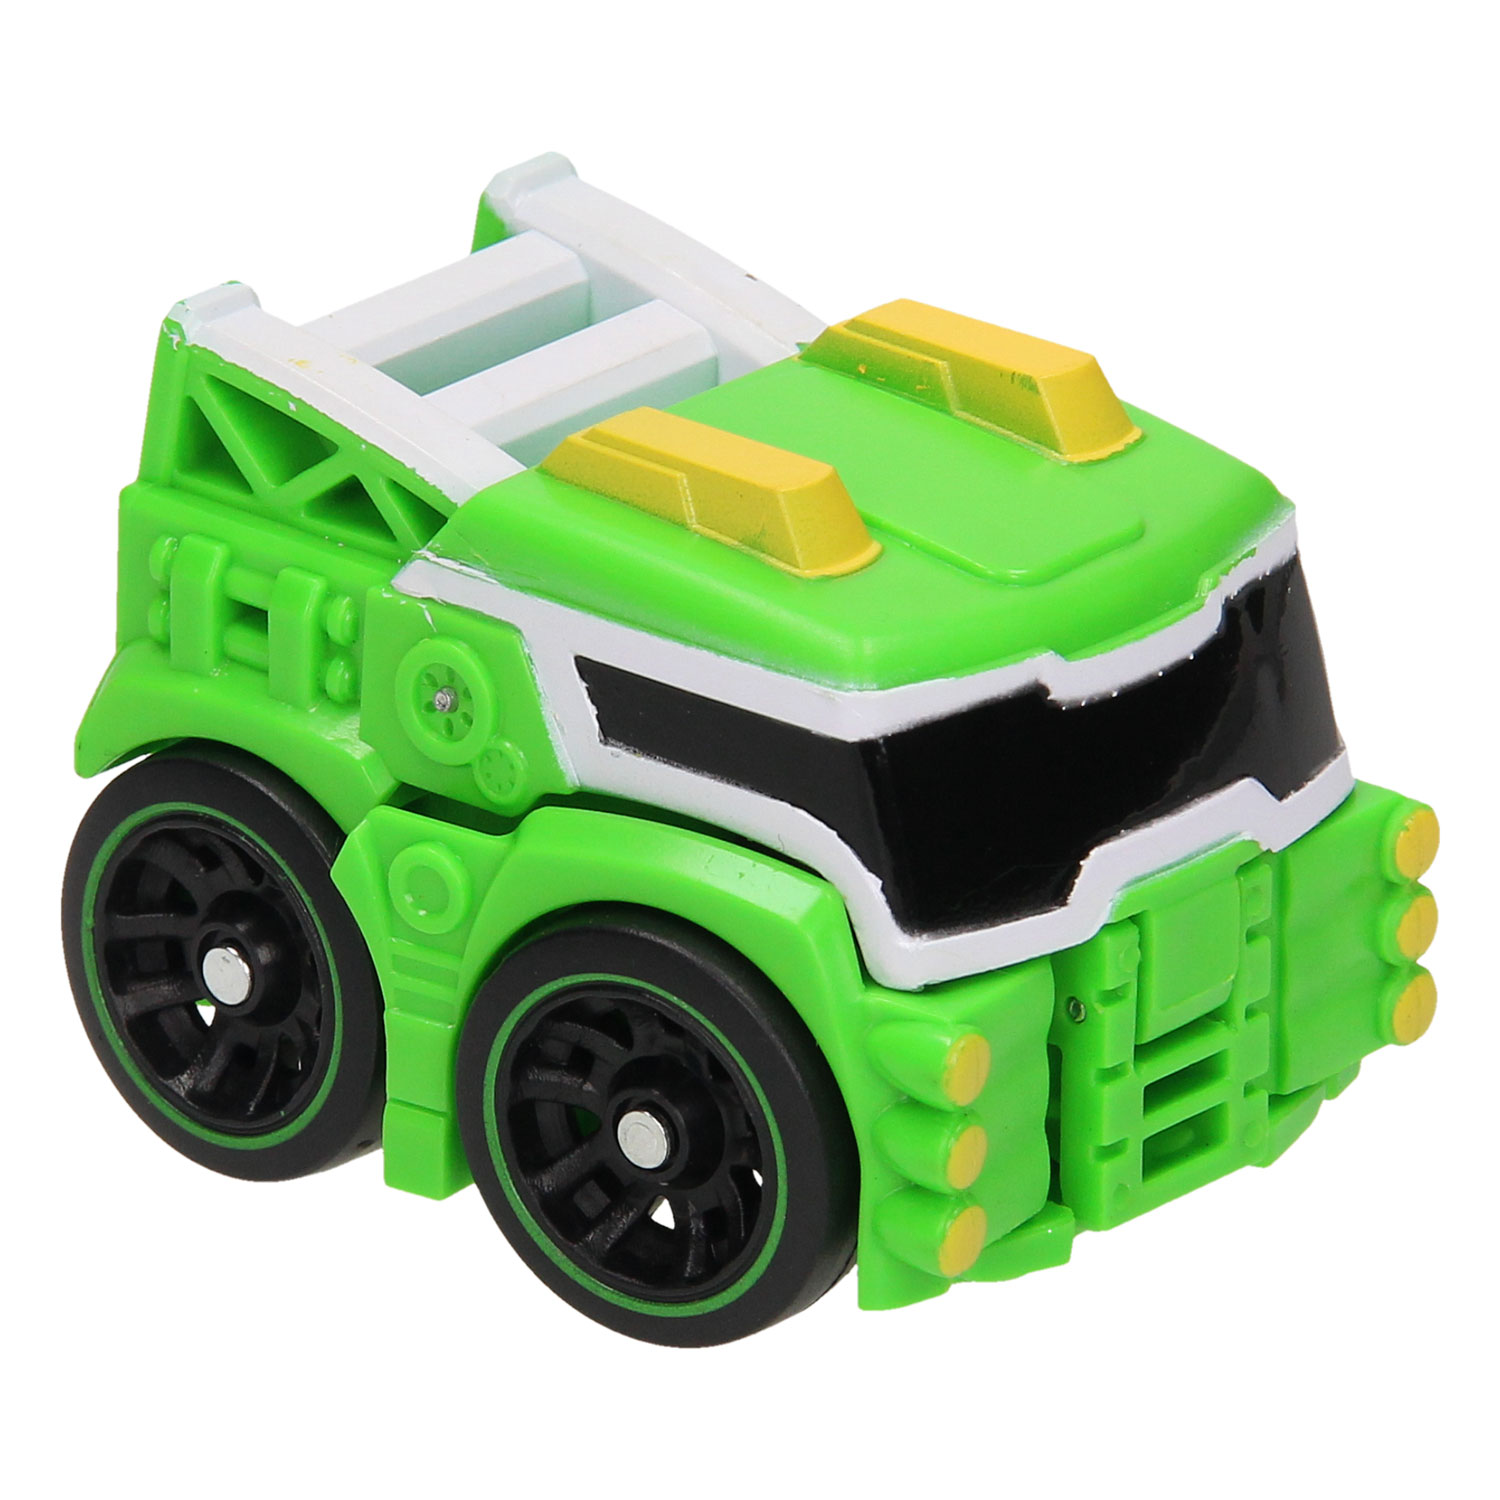 Max Robot Transformeer Auto - Groen